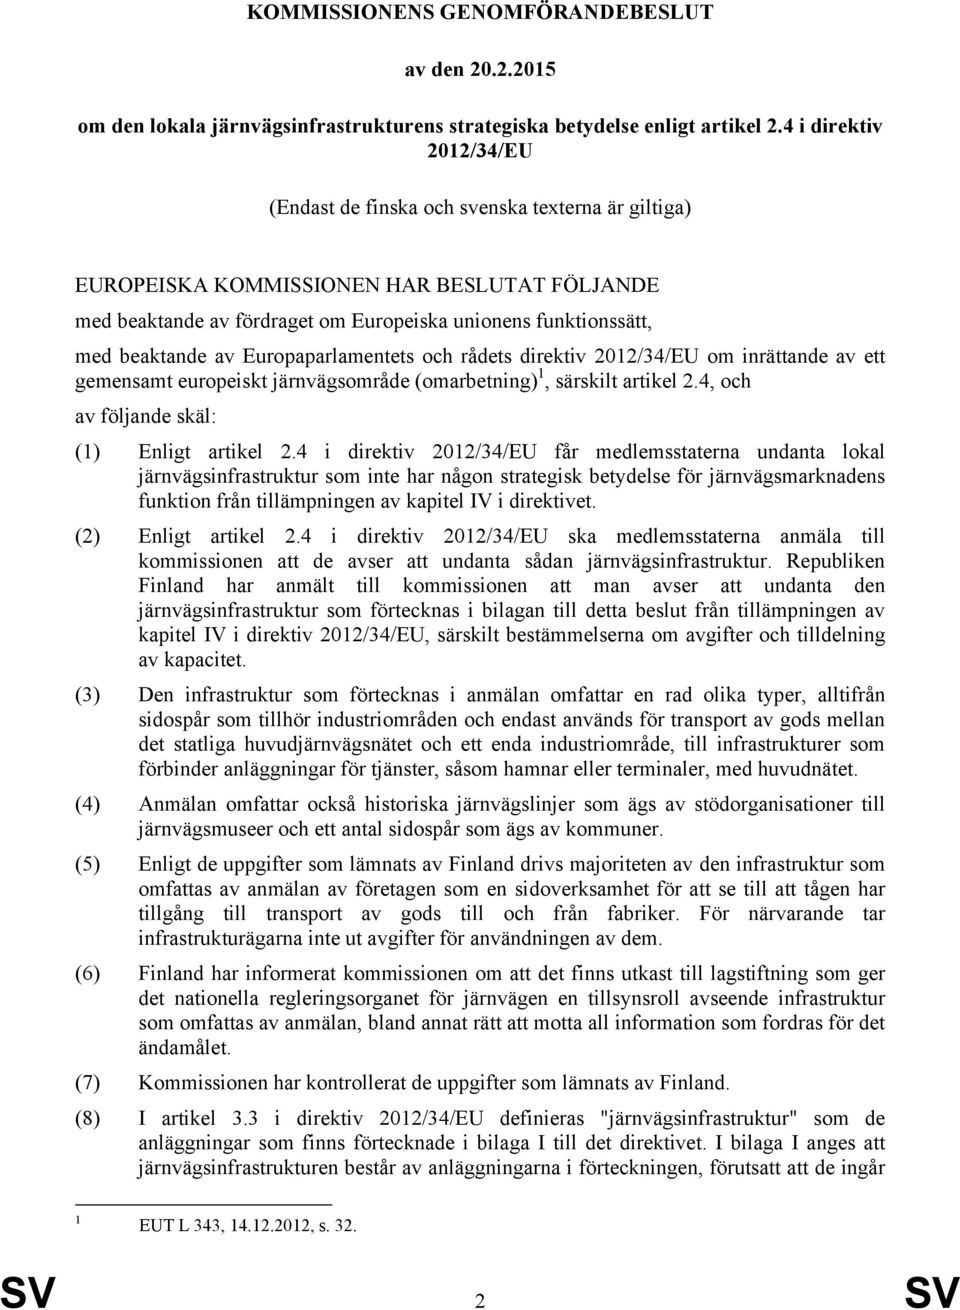 av Europaparlamentets och rådets direktiv 2012/34/EU om inrättande av ett gemensamt europeiskt järnvägsområde (omarbetning) 1, särskilt artikel 2.4, och av följande skäl: (1) Enligt artikel 2.